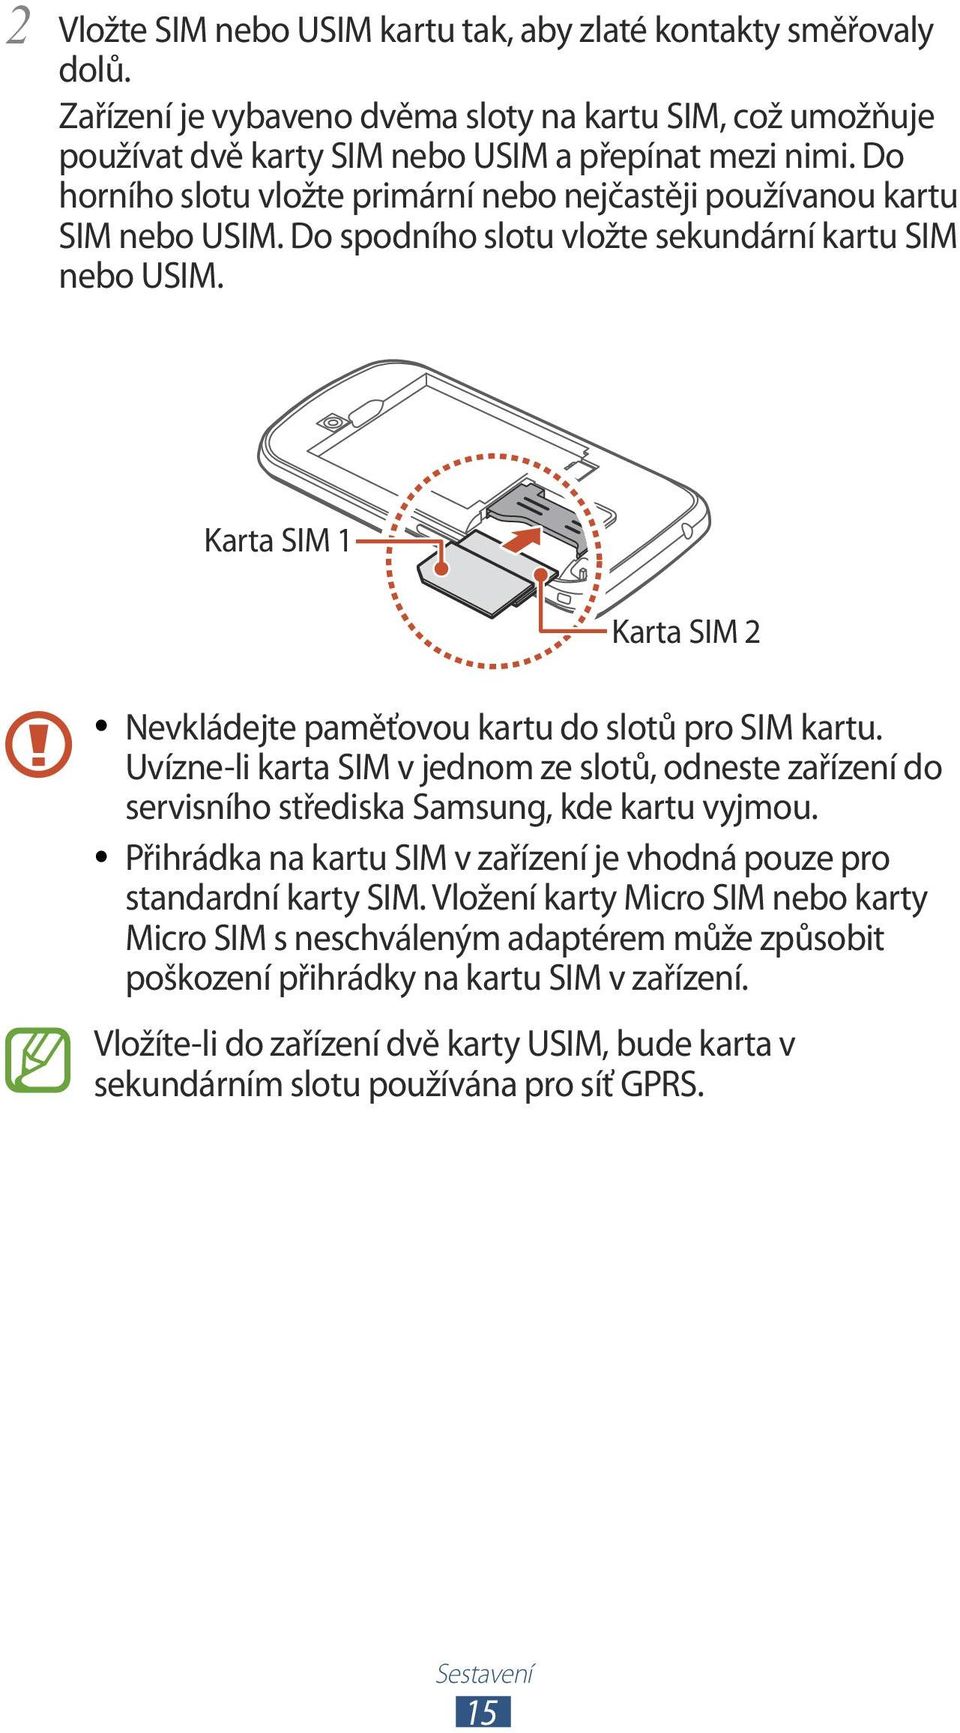 Karta SIM 1 Karta SIM 2 Nevkládejte paměťovou kartu do slotů pro SIM kartu. Uvízne-li karta SIM v jednom ze slotů, odneste zařízení do servisního střediska Samsung, kde kartu vyjmou.